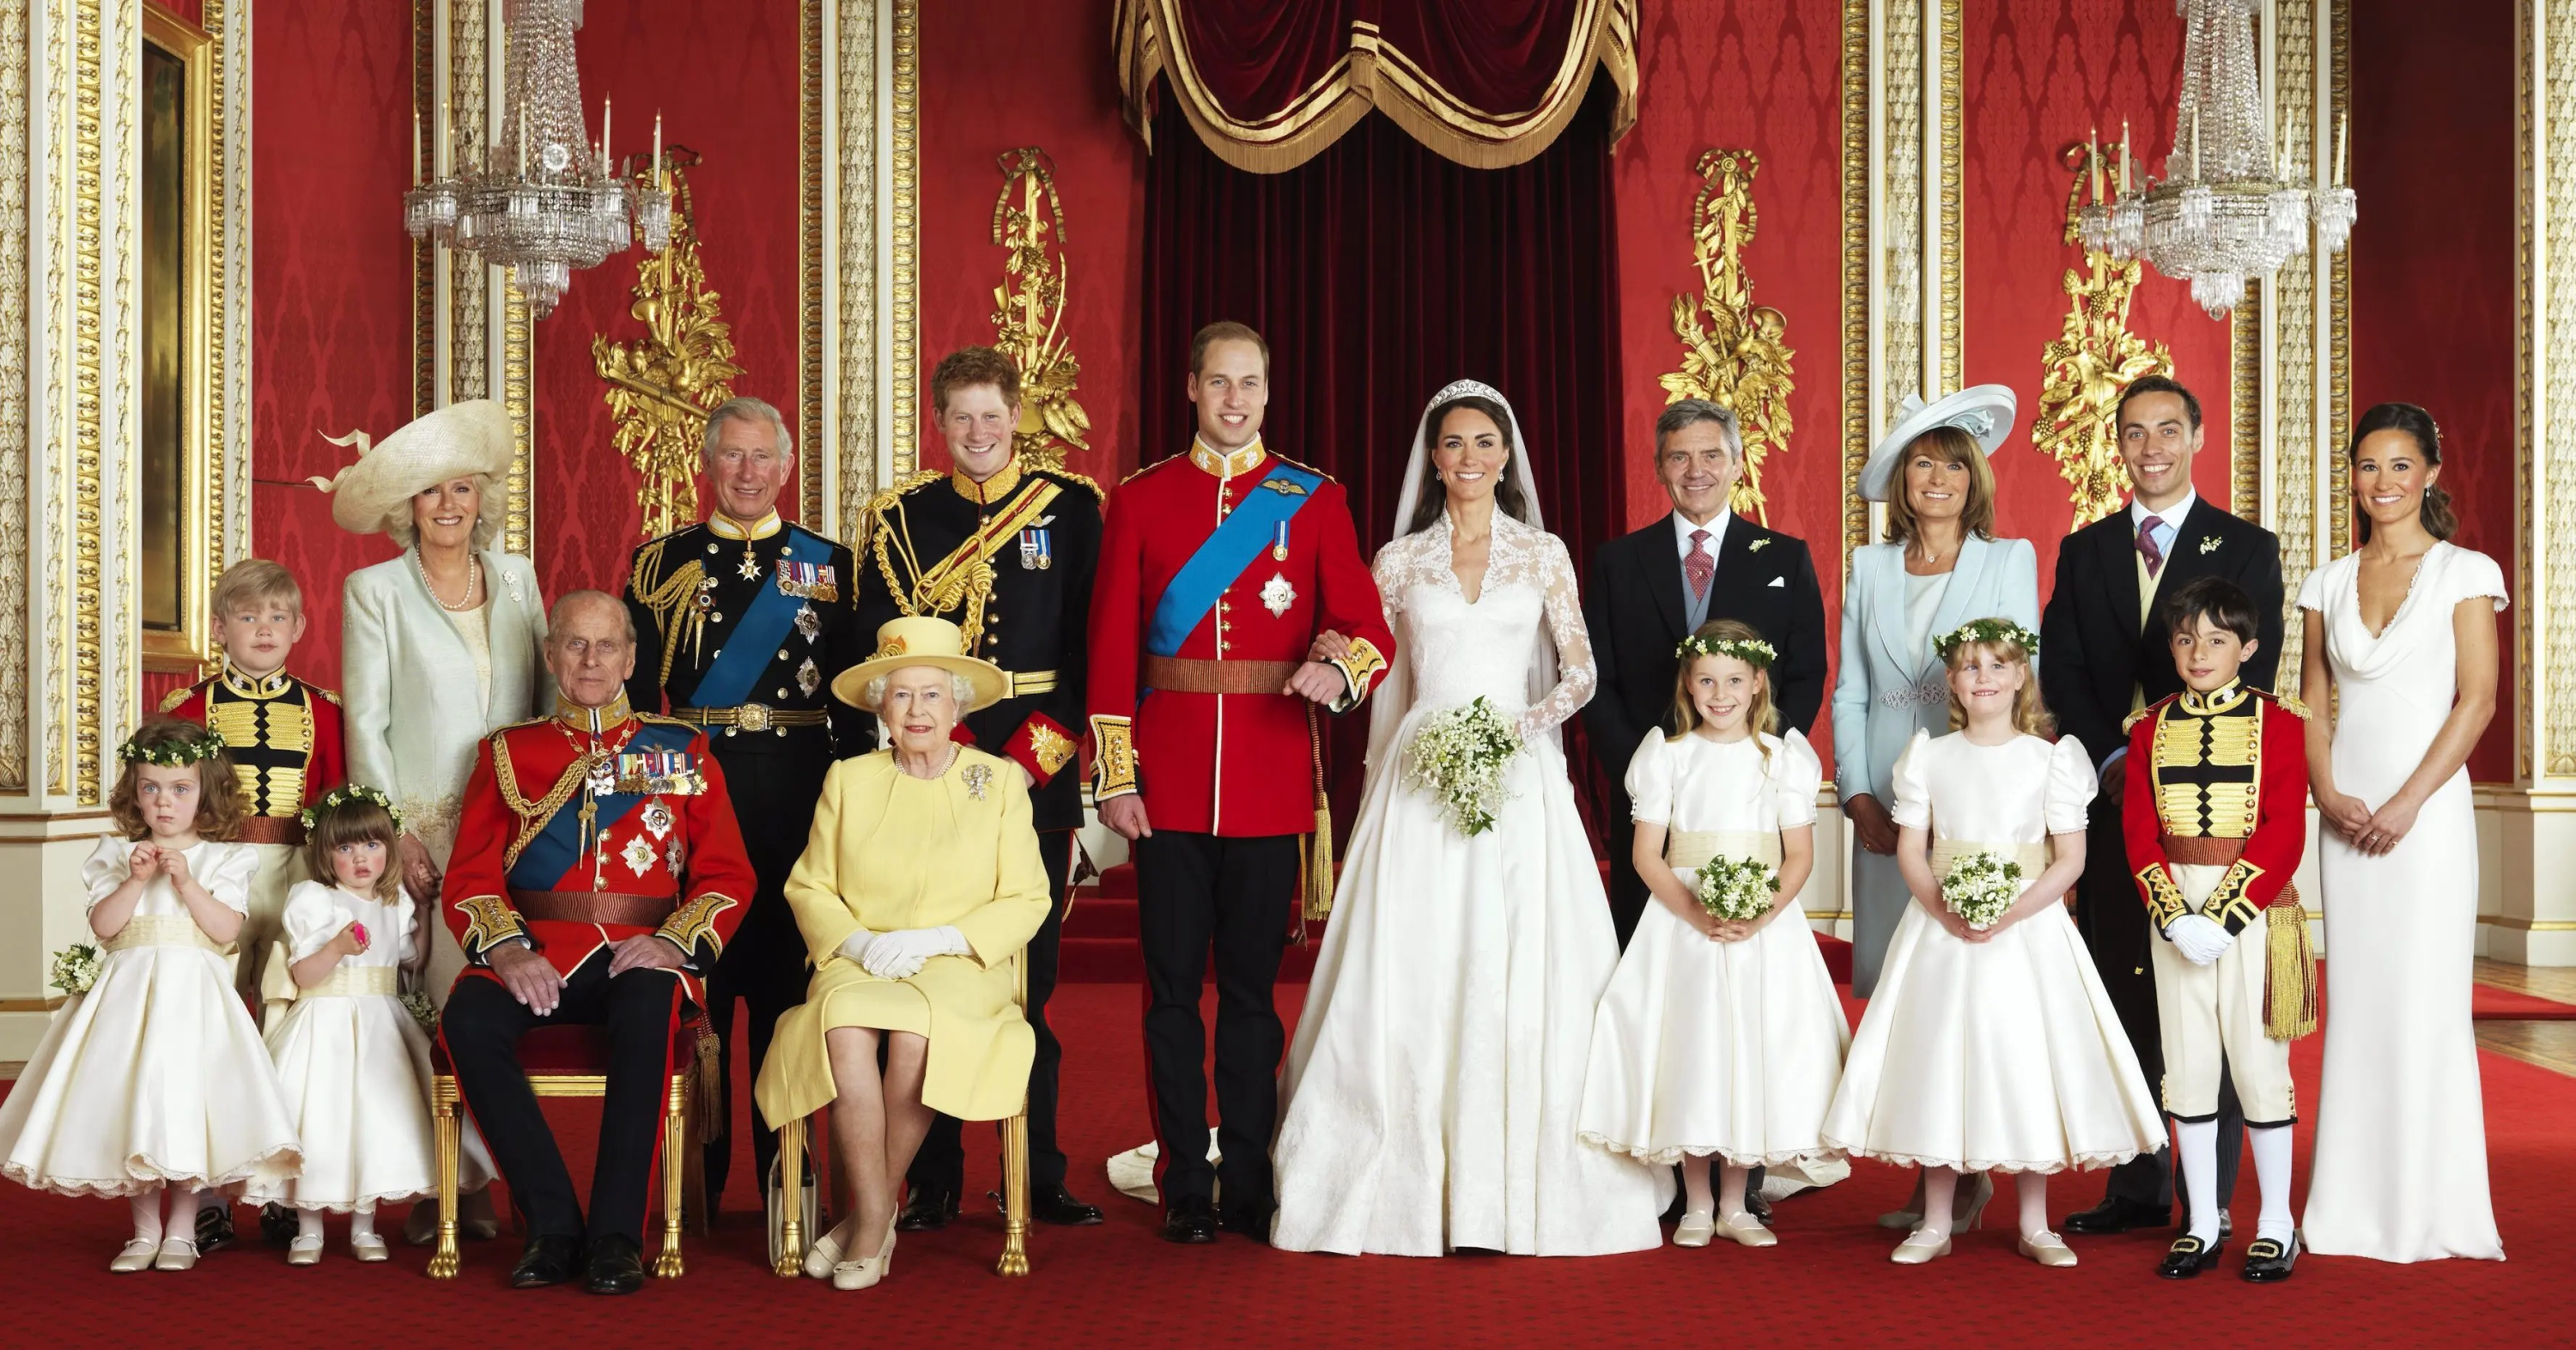 Michael acompañó a Kate Middleton al altar. Imagen oficial del enlace.